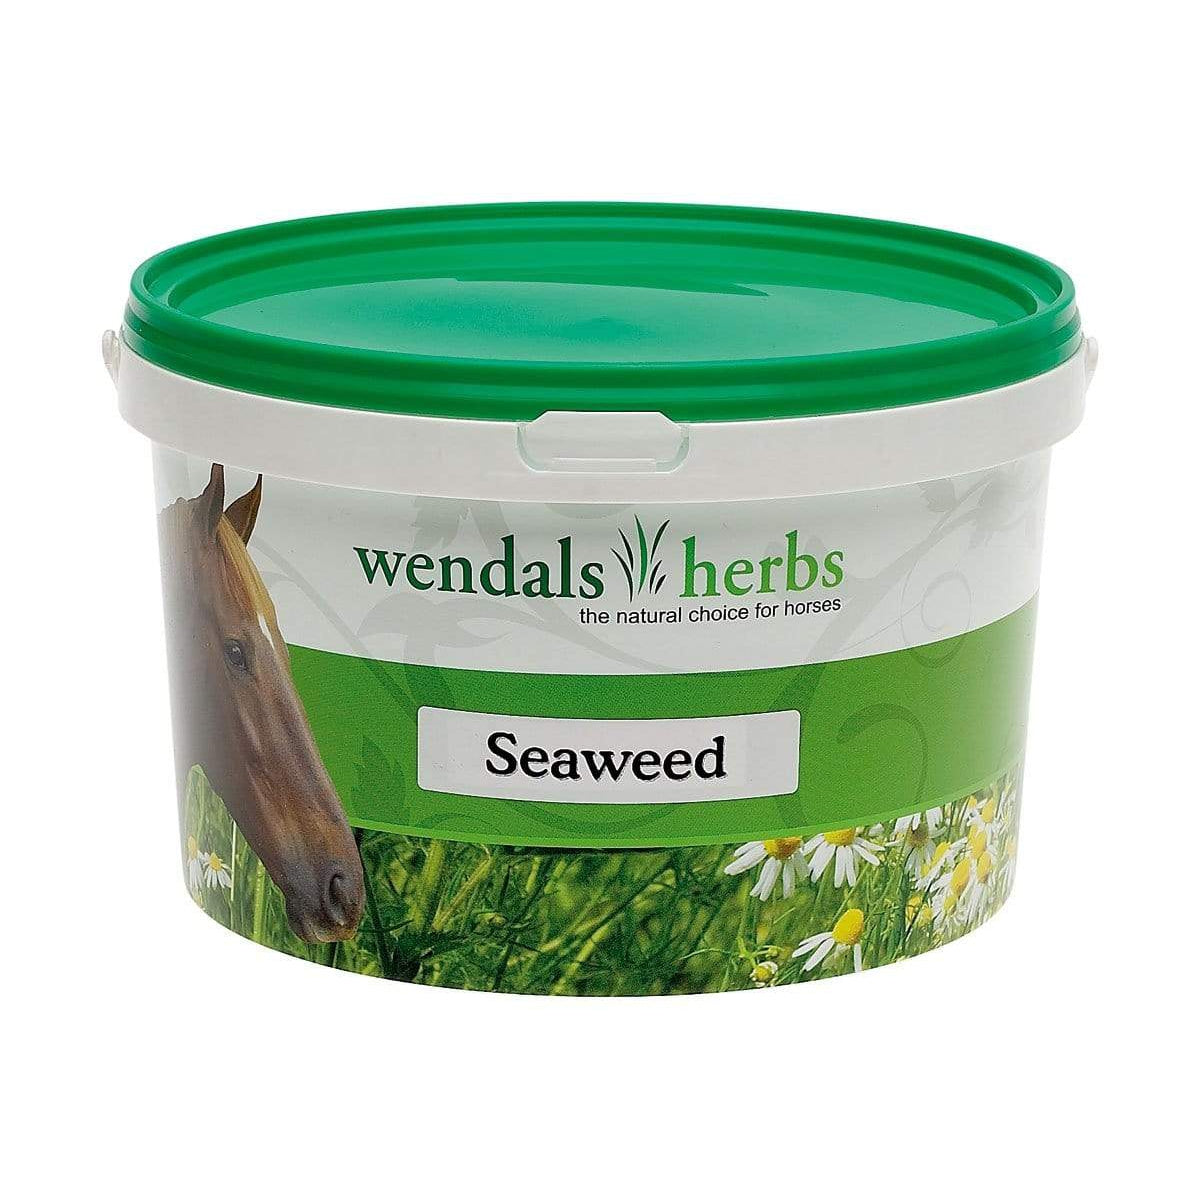 Wendals Herbs Seaweed